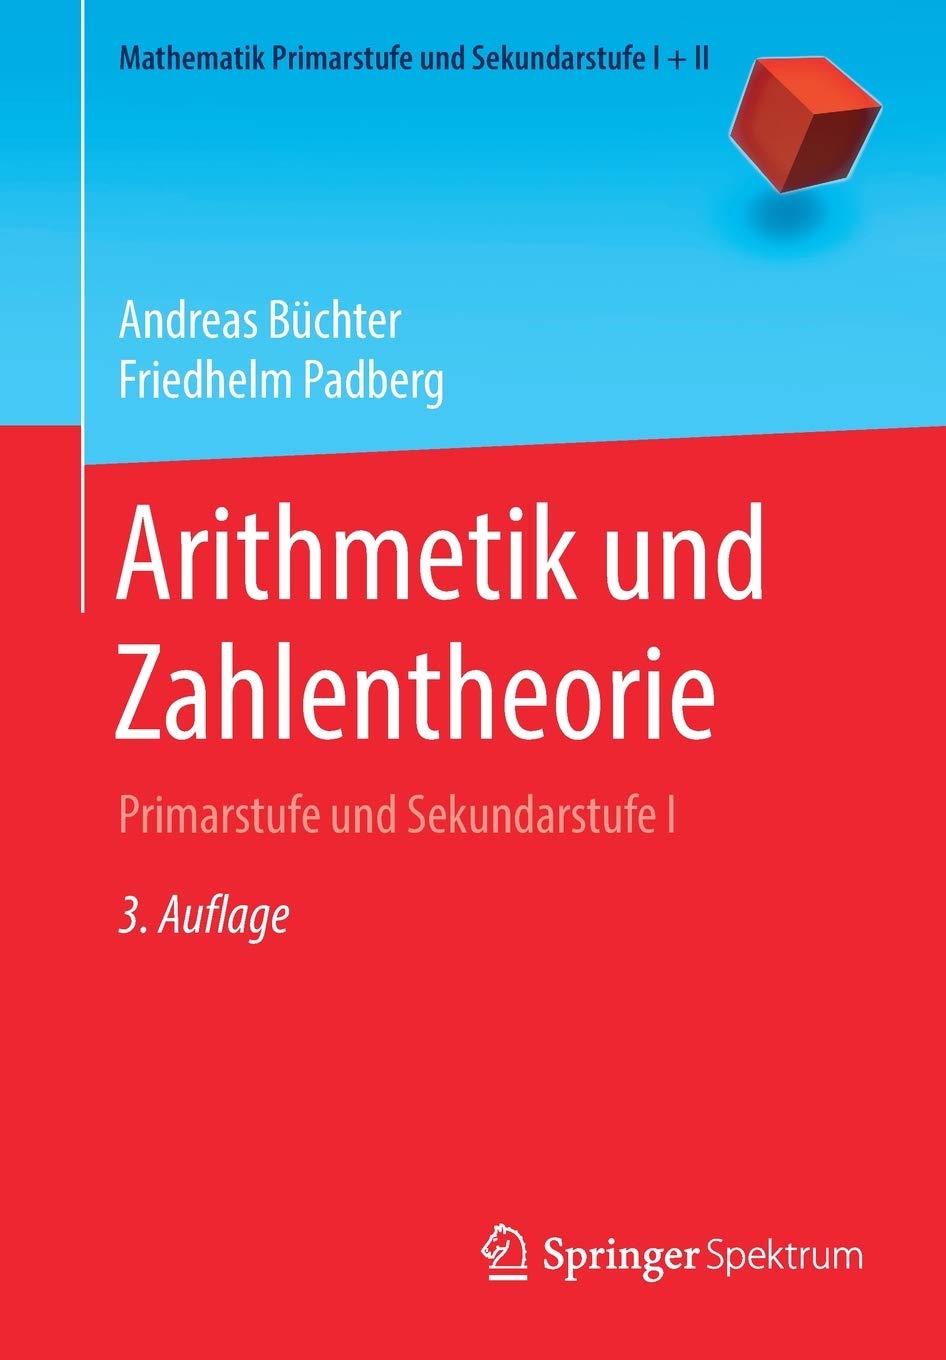 Arithmetik und Zahlentheorie